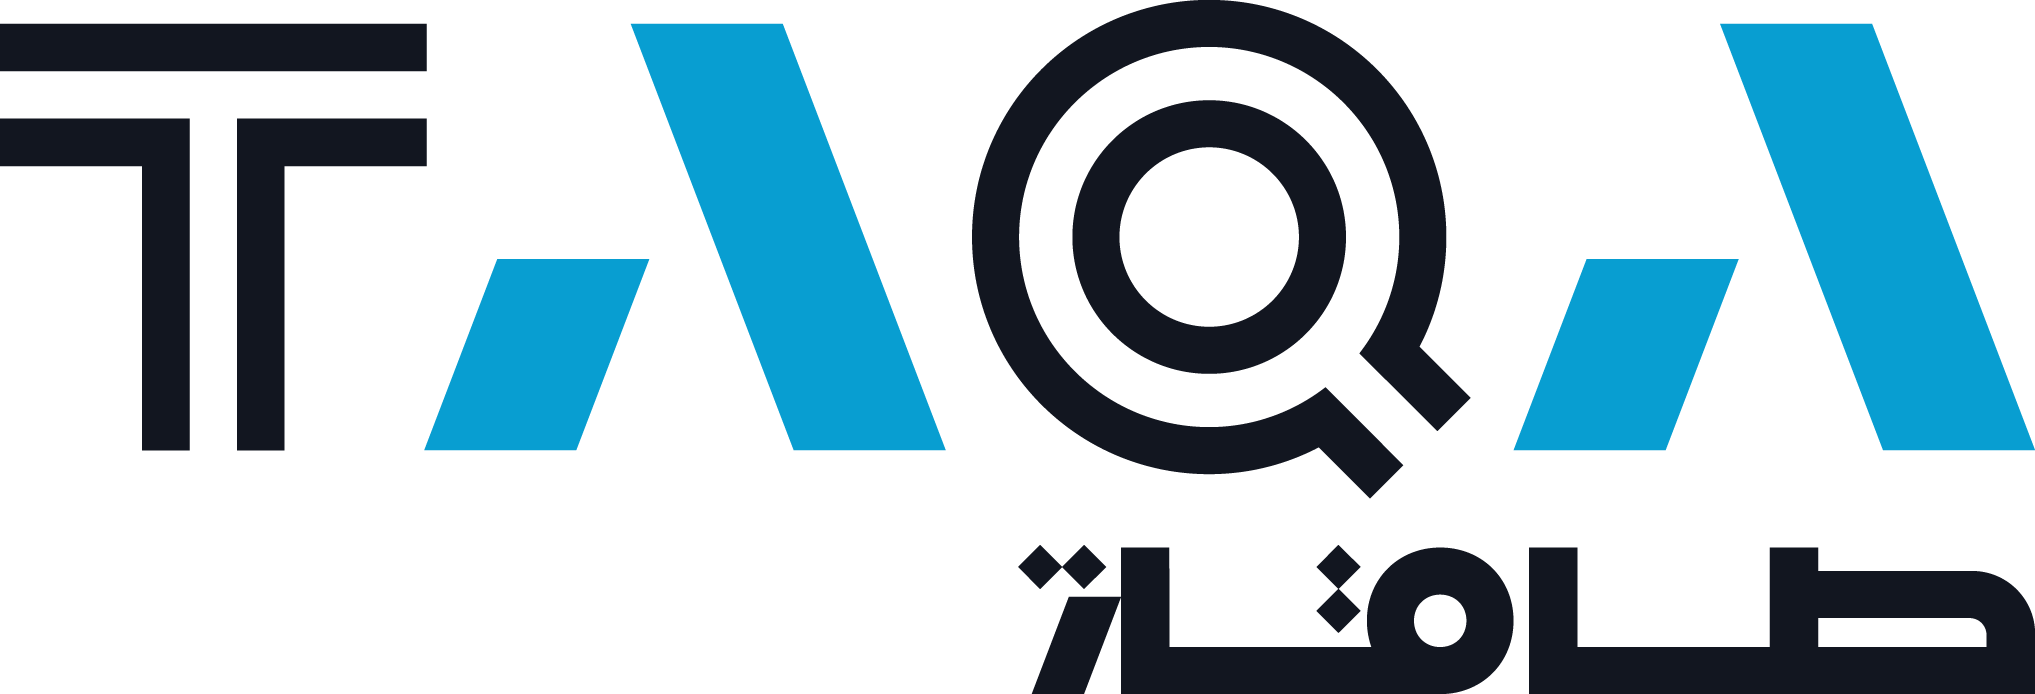 TAQA Logo 2